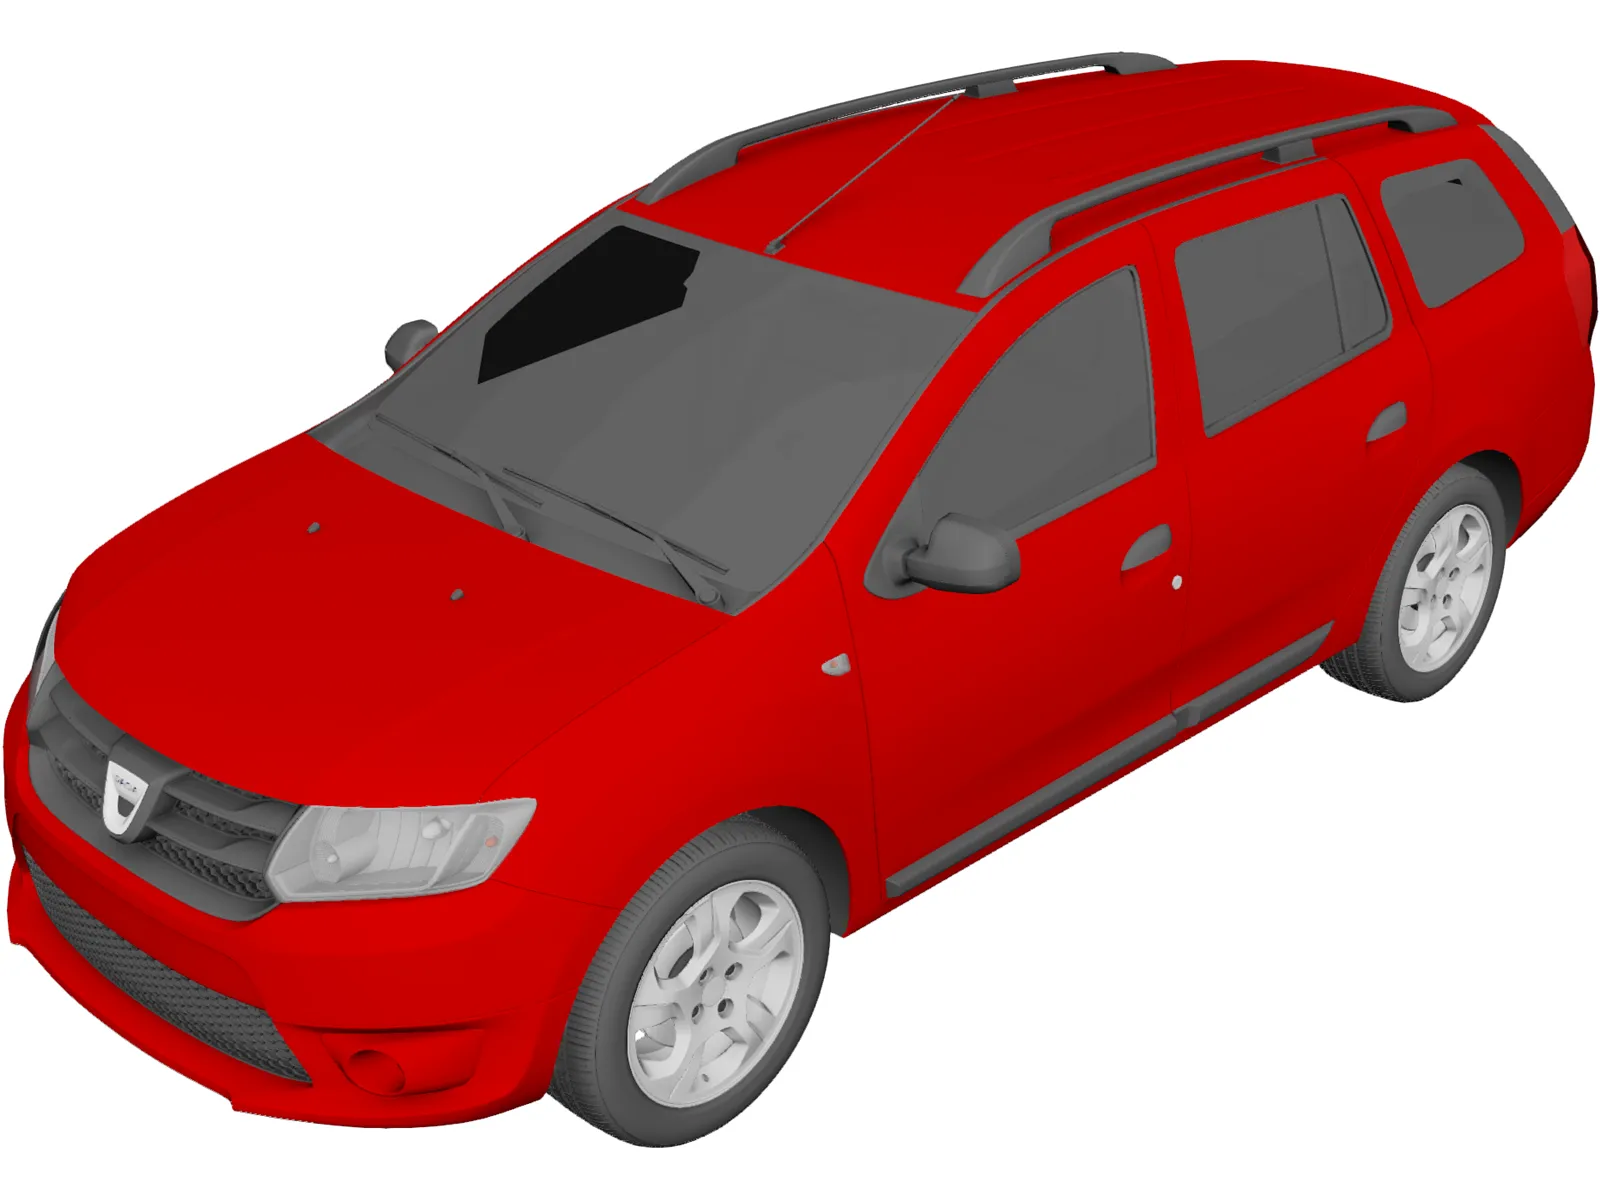 Dacia Logan MCV Wagon (2015) 3D Model